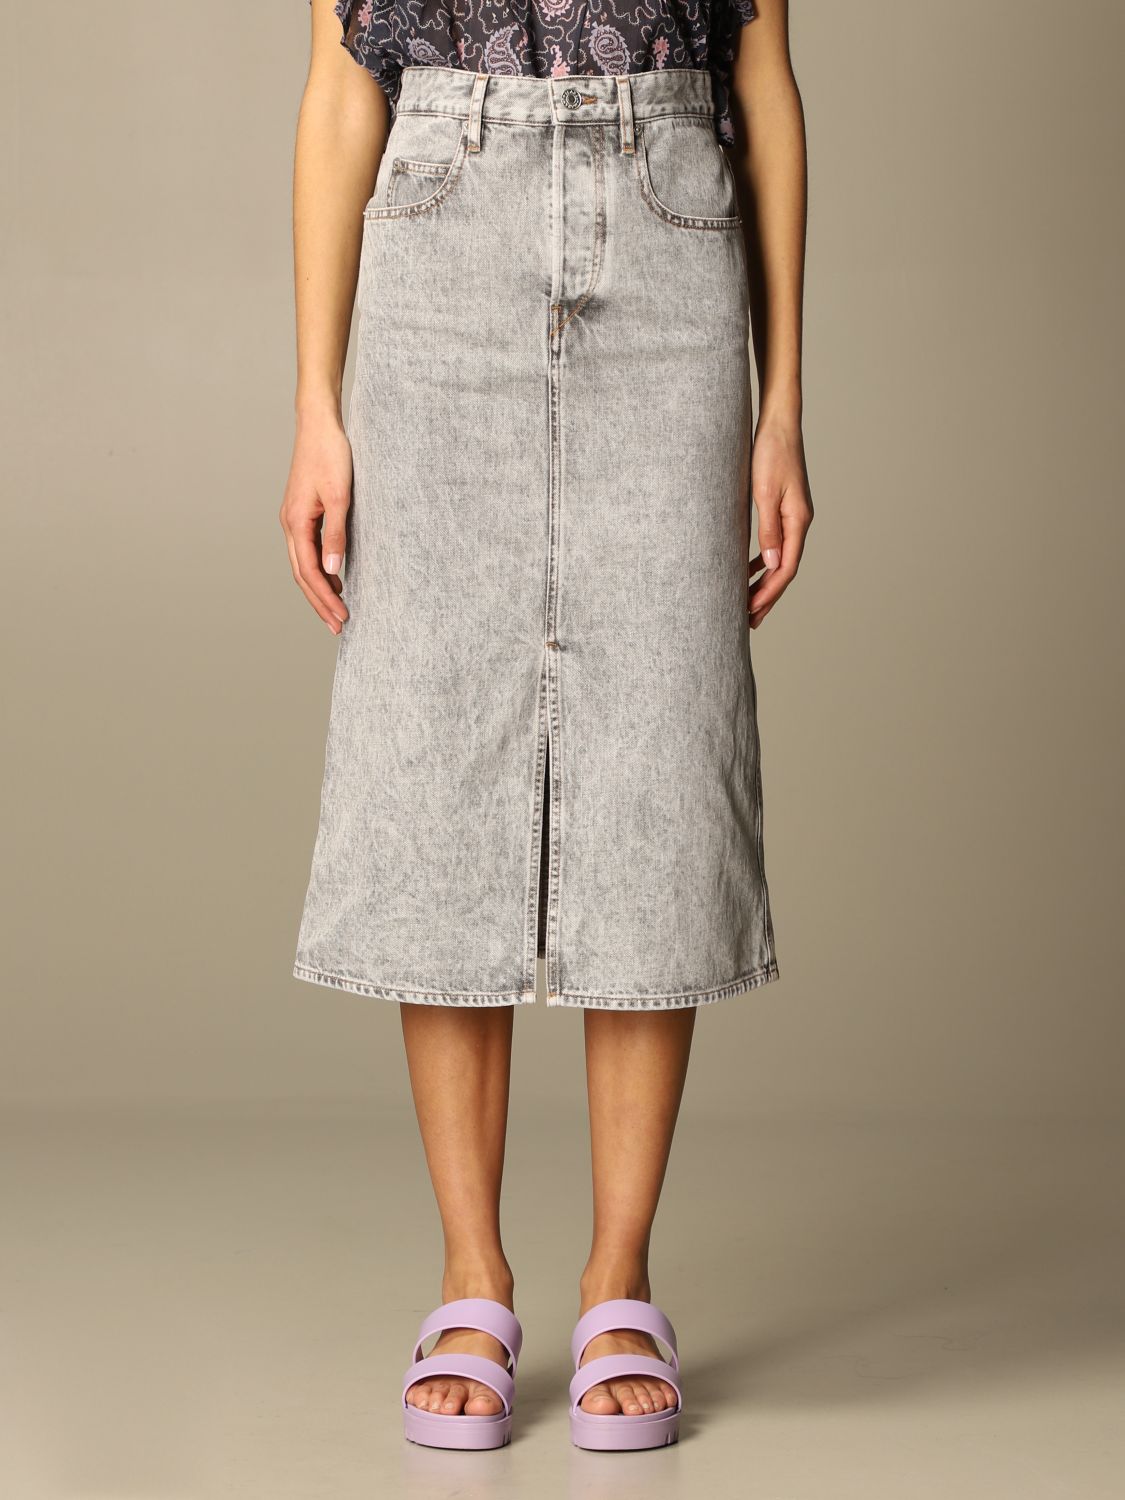 ISABEL MARANT ETOILE: 5-pocket denim skirt - Grey | Isabel Marant